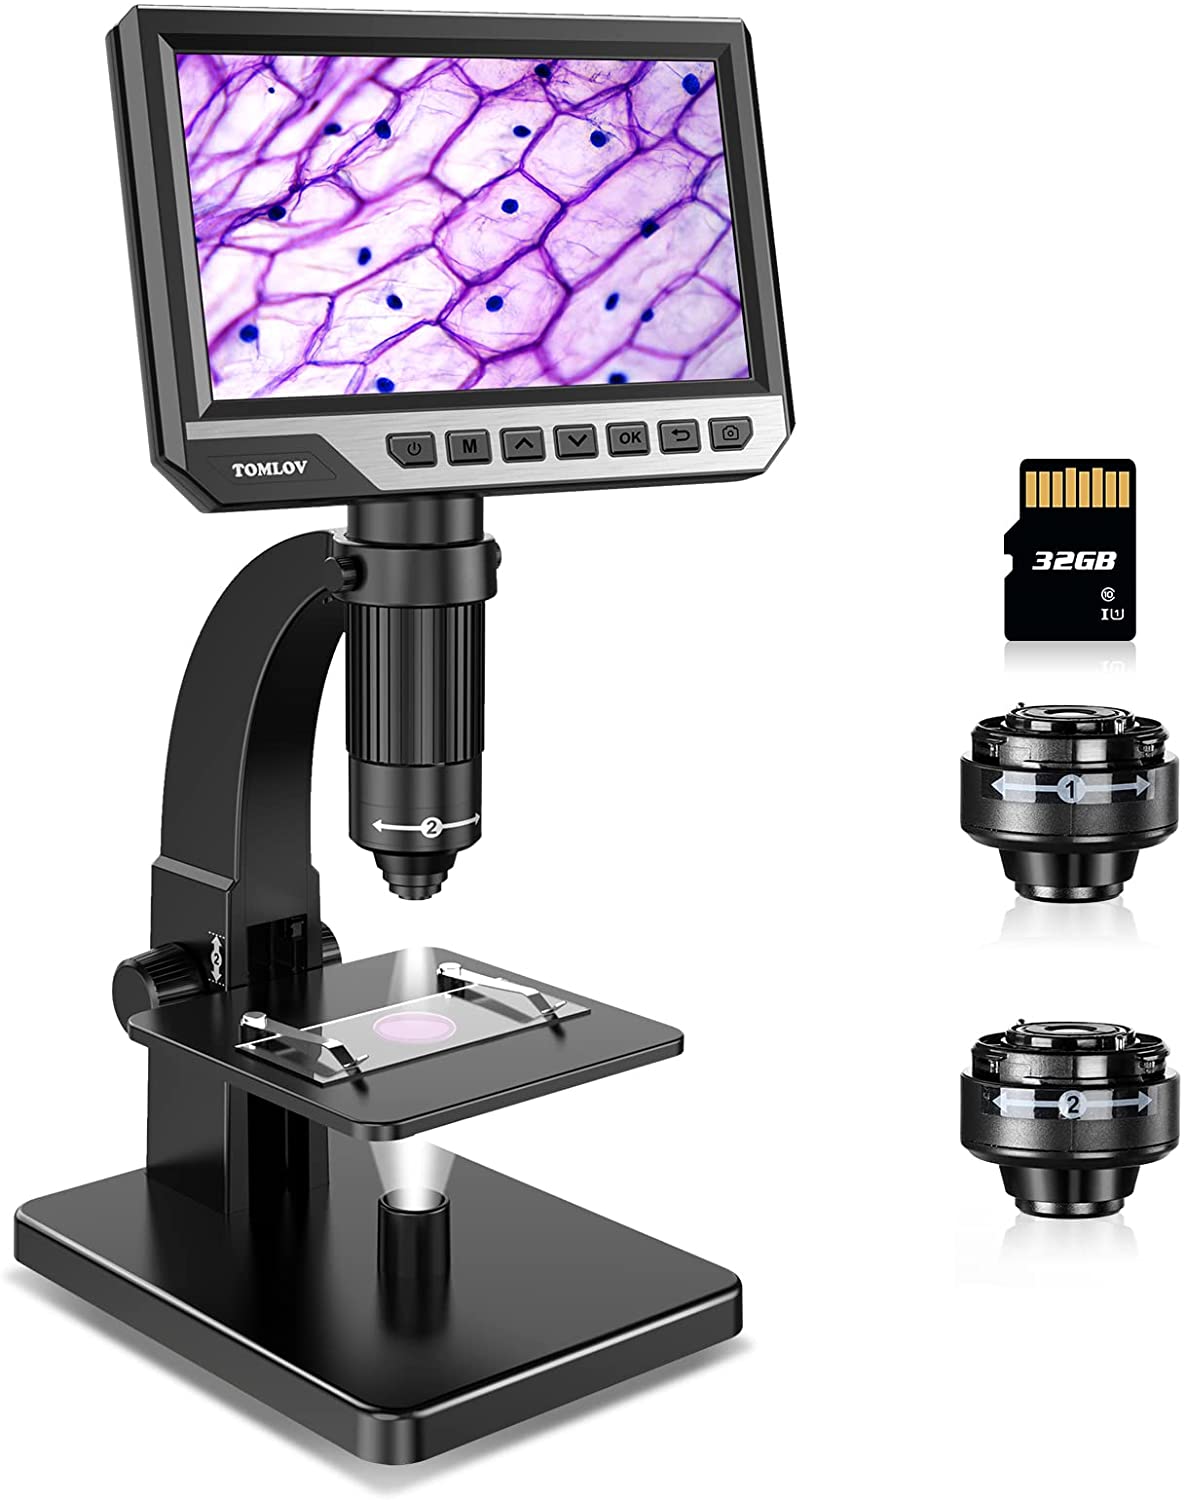 TOMLOV DM11 LCD Digital Microscope